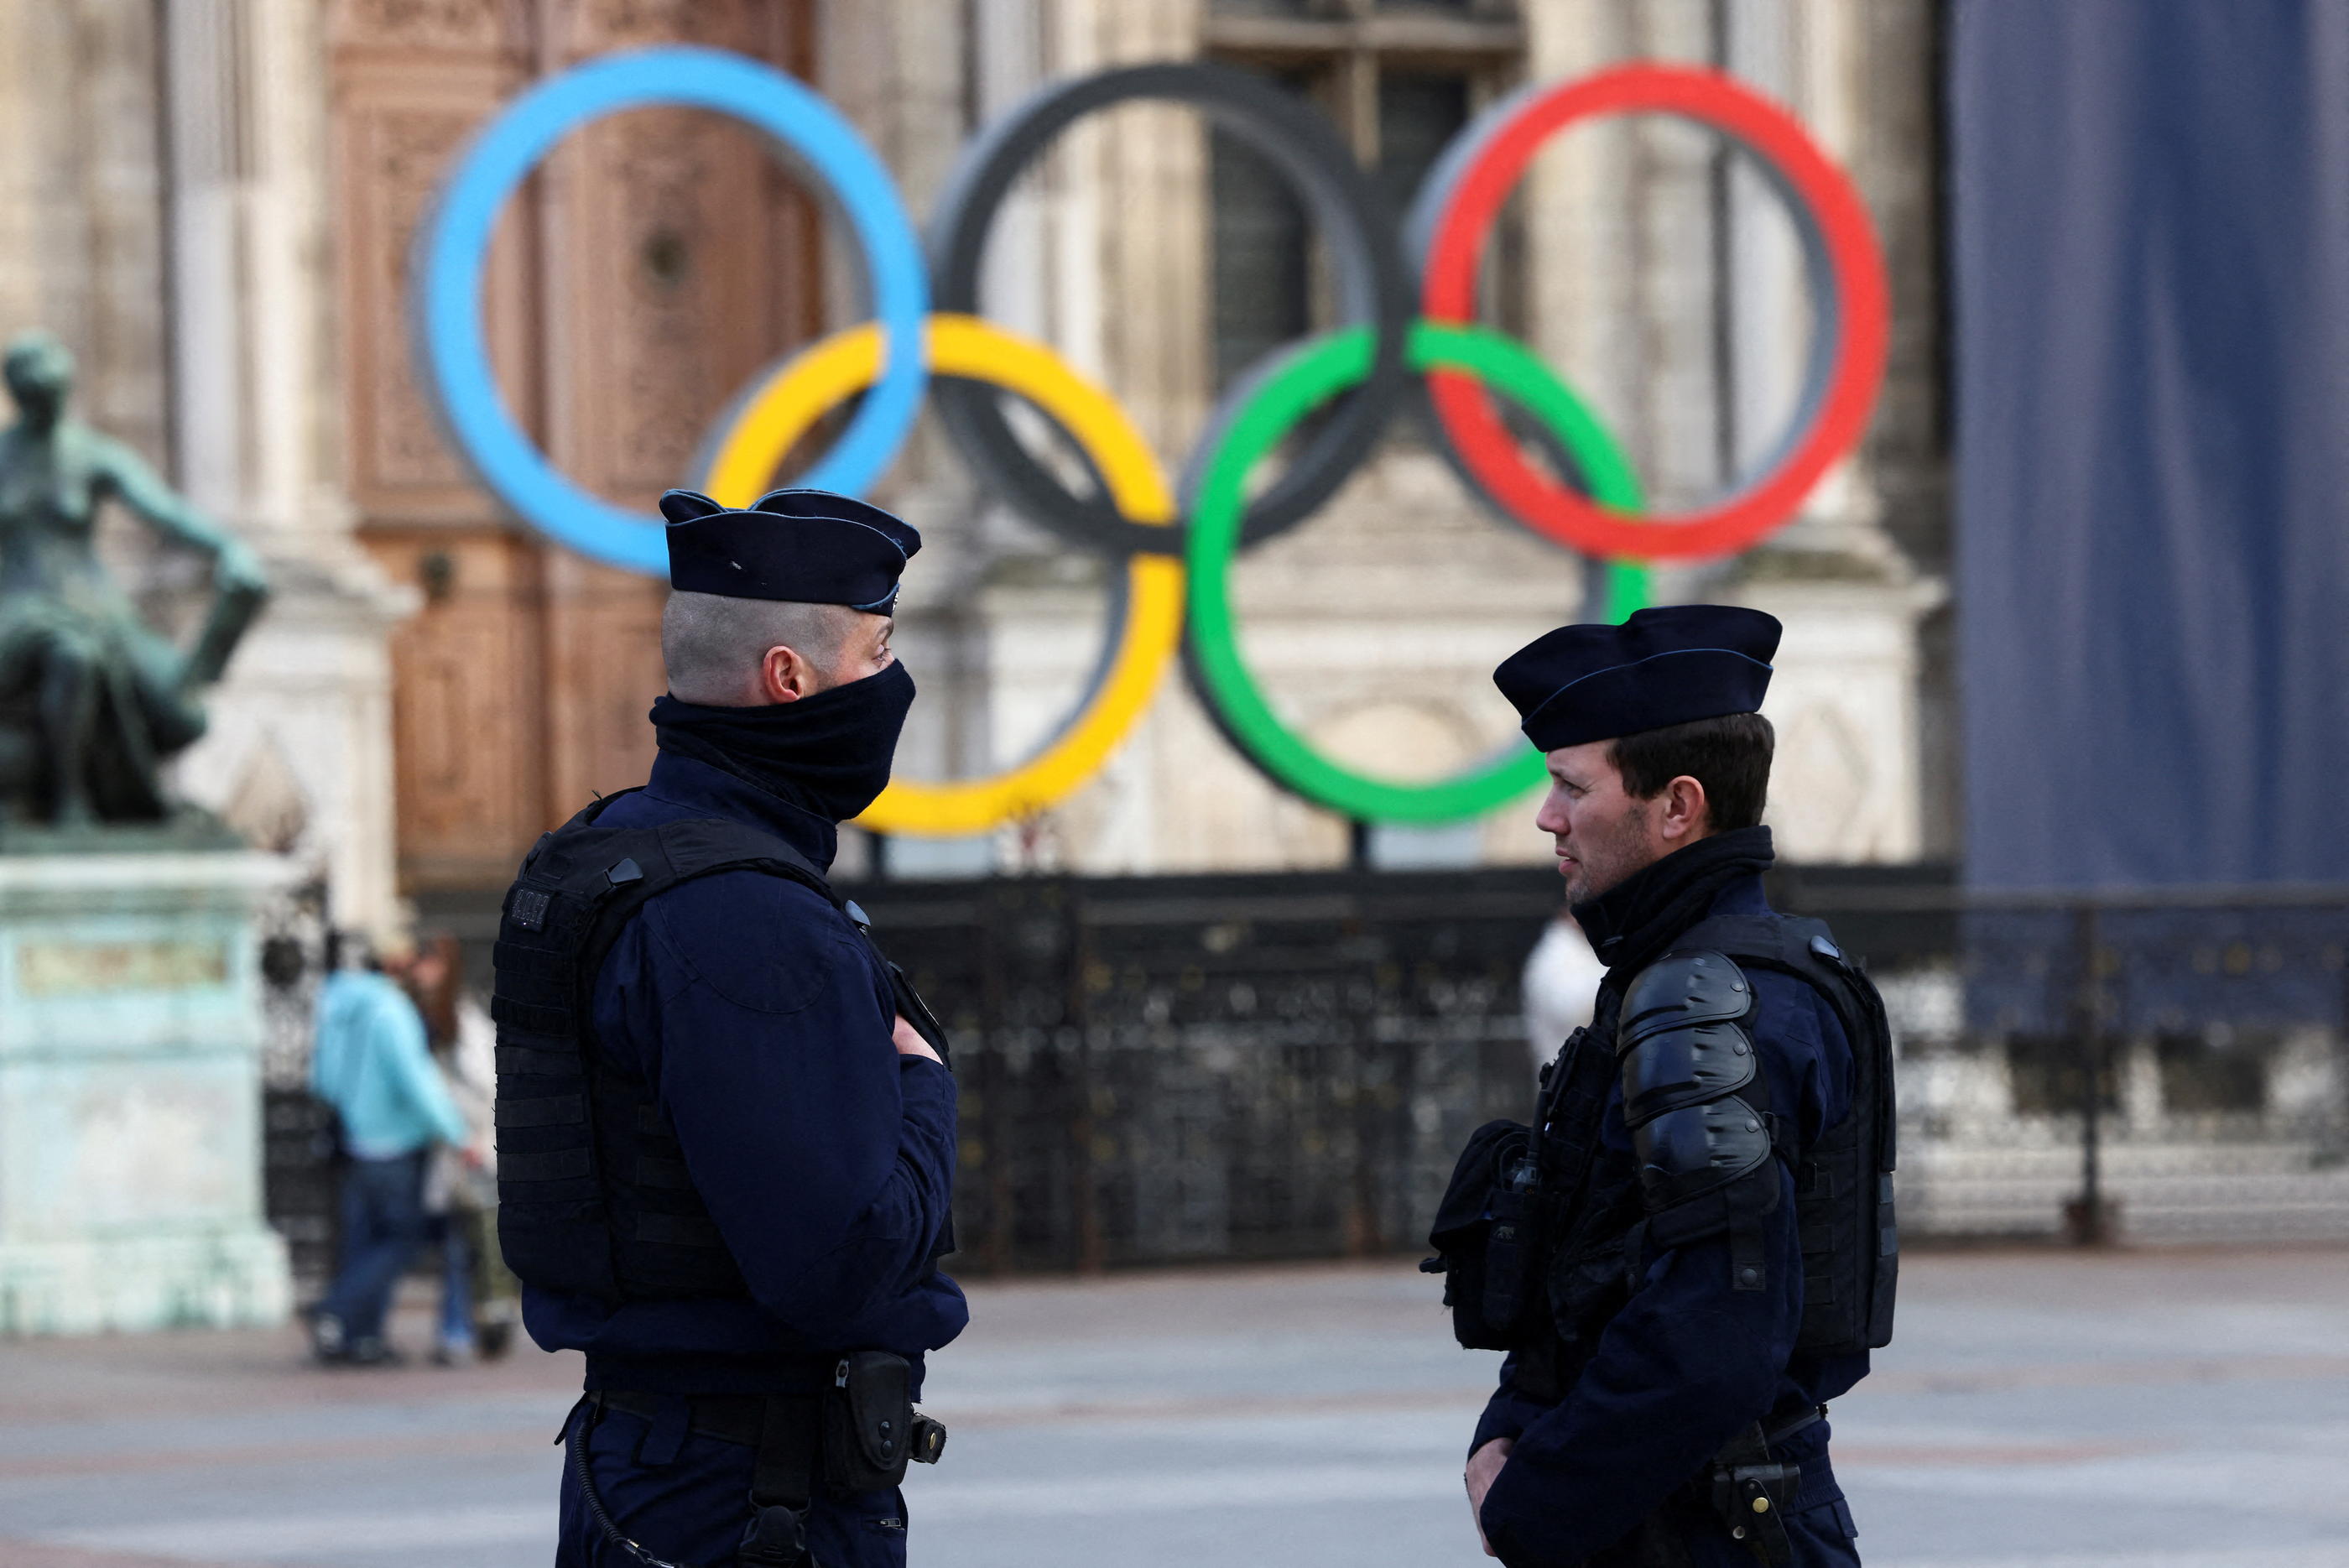 Police et gendarmerie pourraient être mobilisées pour pallier le manque d'agents de sécurité lors de la cérémonie d'ouverture. REUTERS/Yves Herman